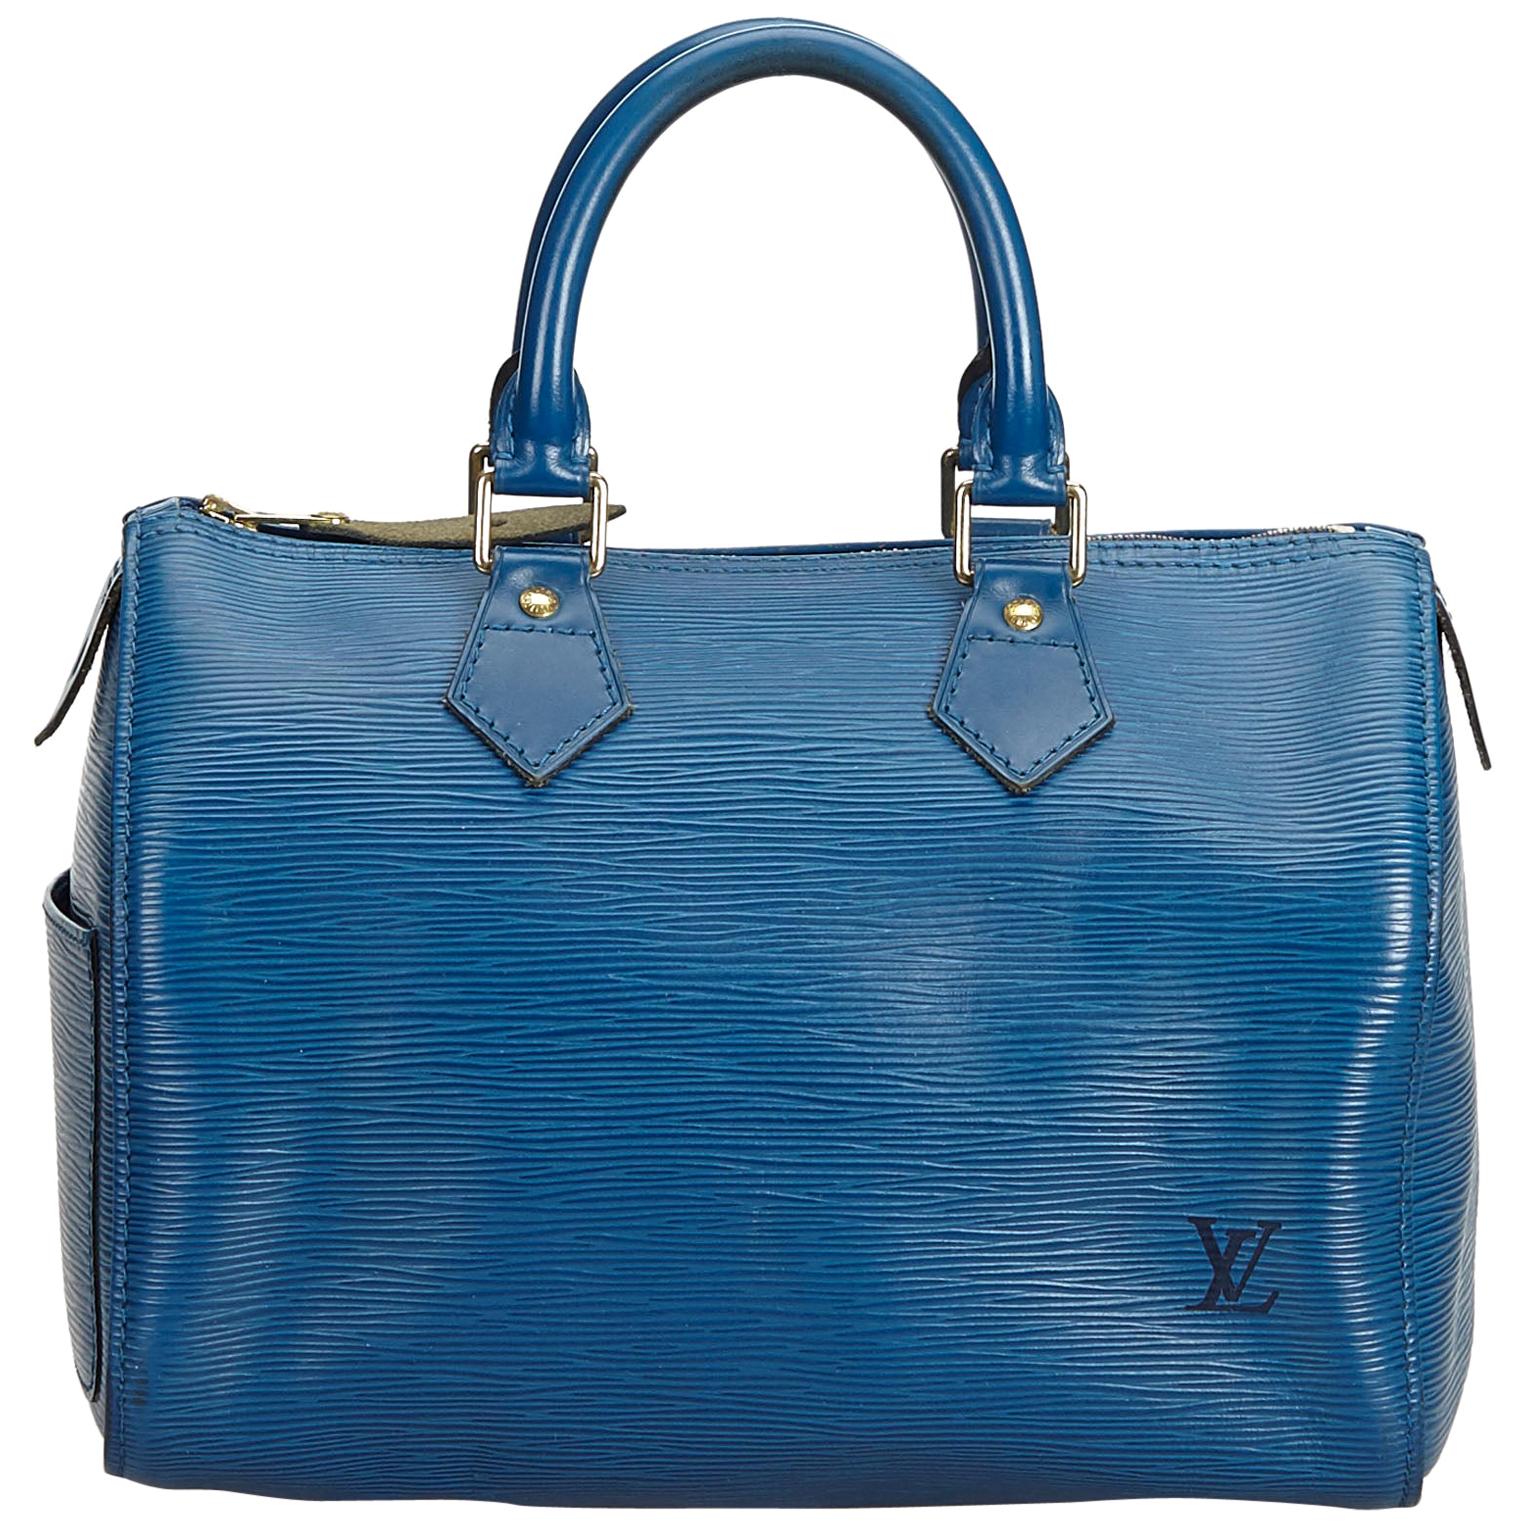 Vintage Authentic Louis Vuitton Blue Epi Leather Speedy 25 France MEDIUM 